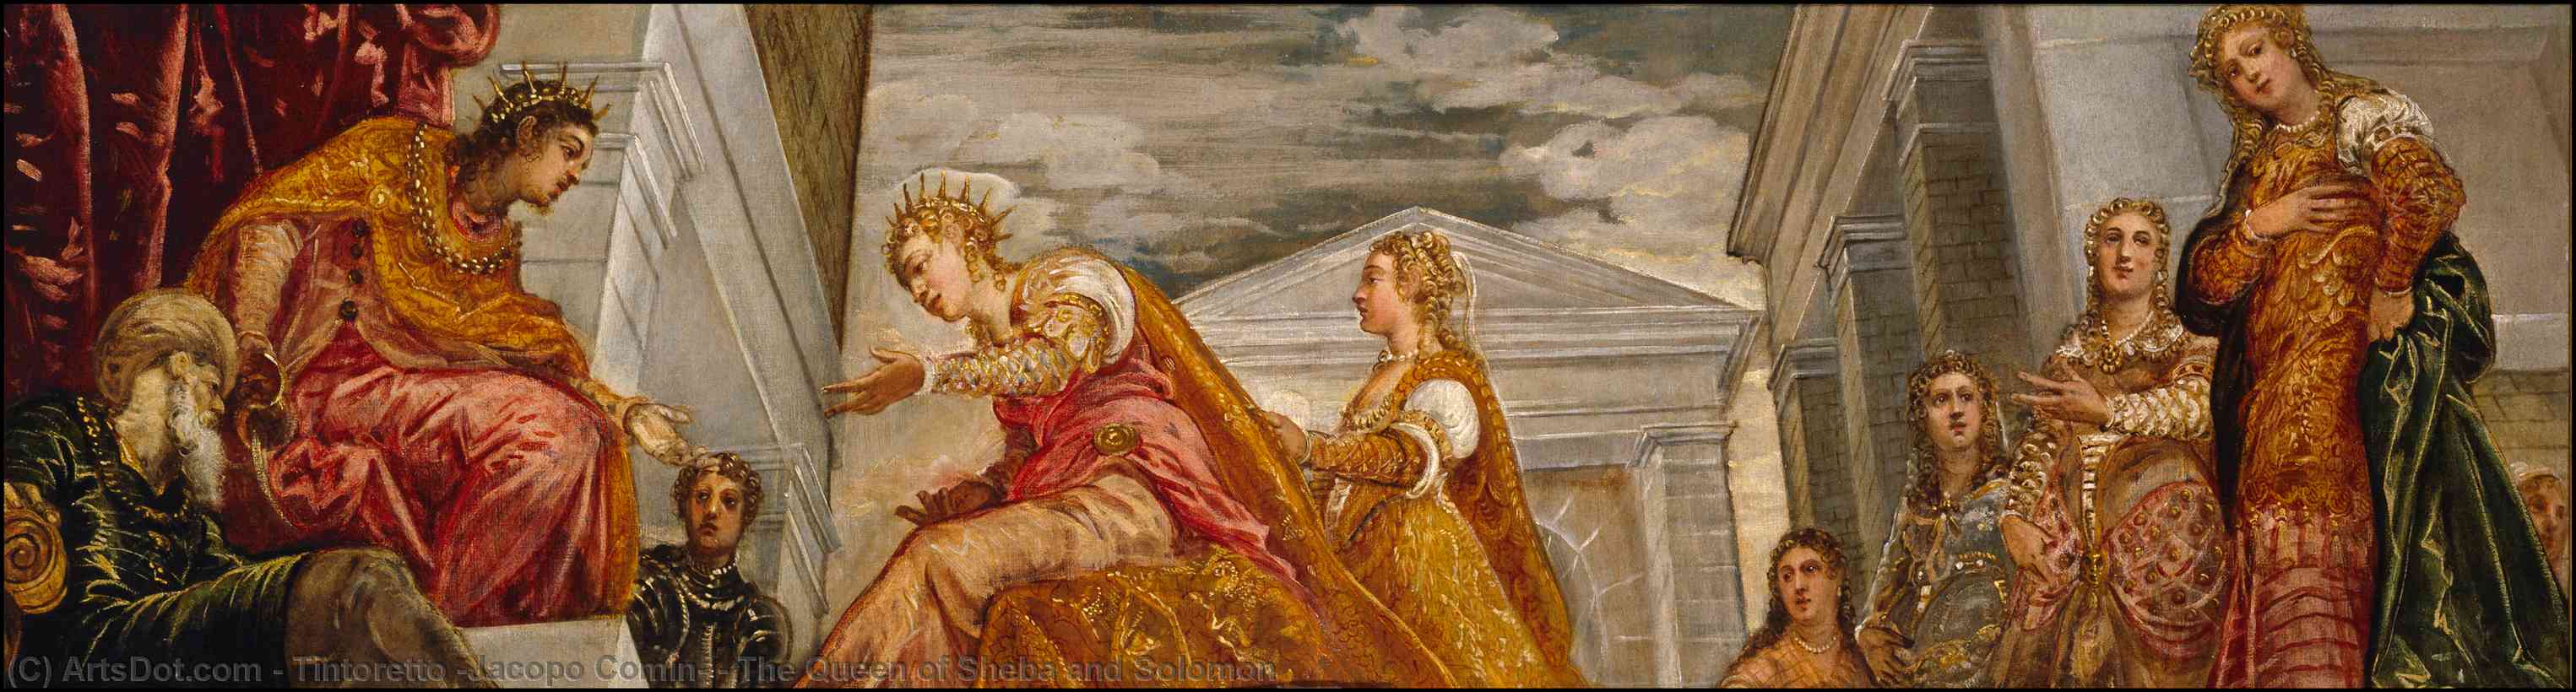 WikiOO.org - Енциклопедия за изящни изкуства - Живопис, Произведения на изкуството Tintoretto (Jacopo Comin) - The Queen of Sheba and Solomon